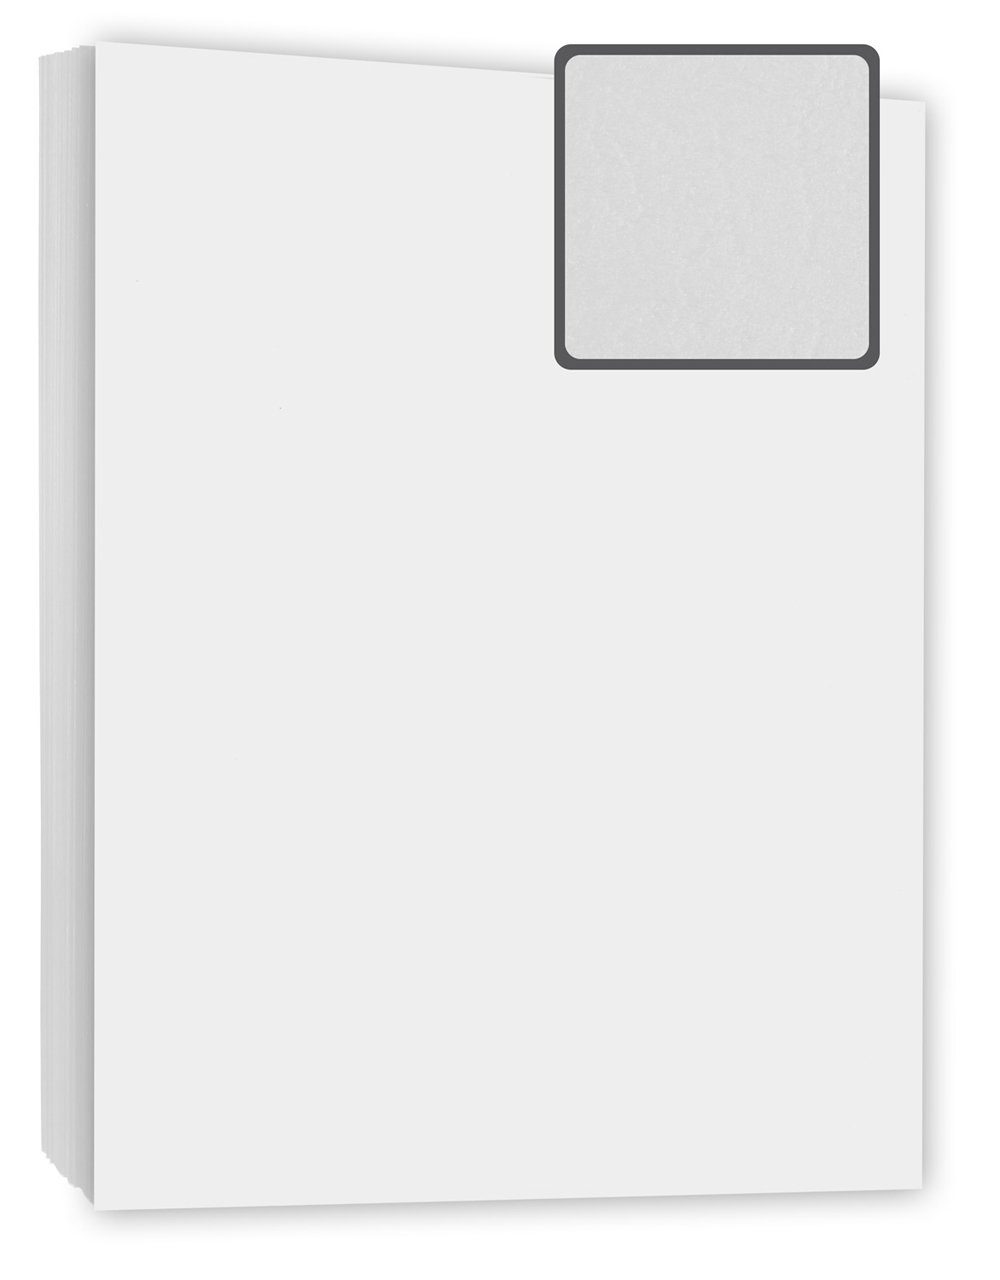 Kopierladen Berlin Papierkarton Bindekarton / Deckblatt, DIN A4 240 g/m², 100 Stück in Lederoptik weiß